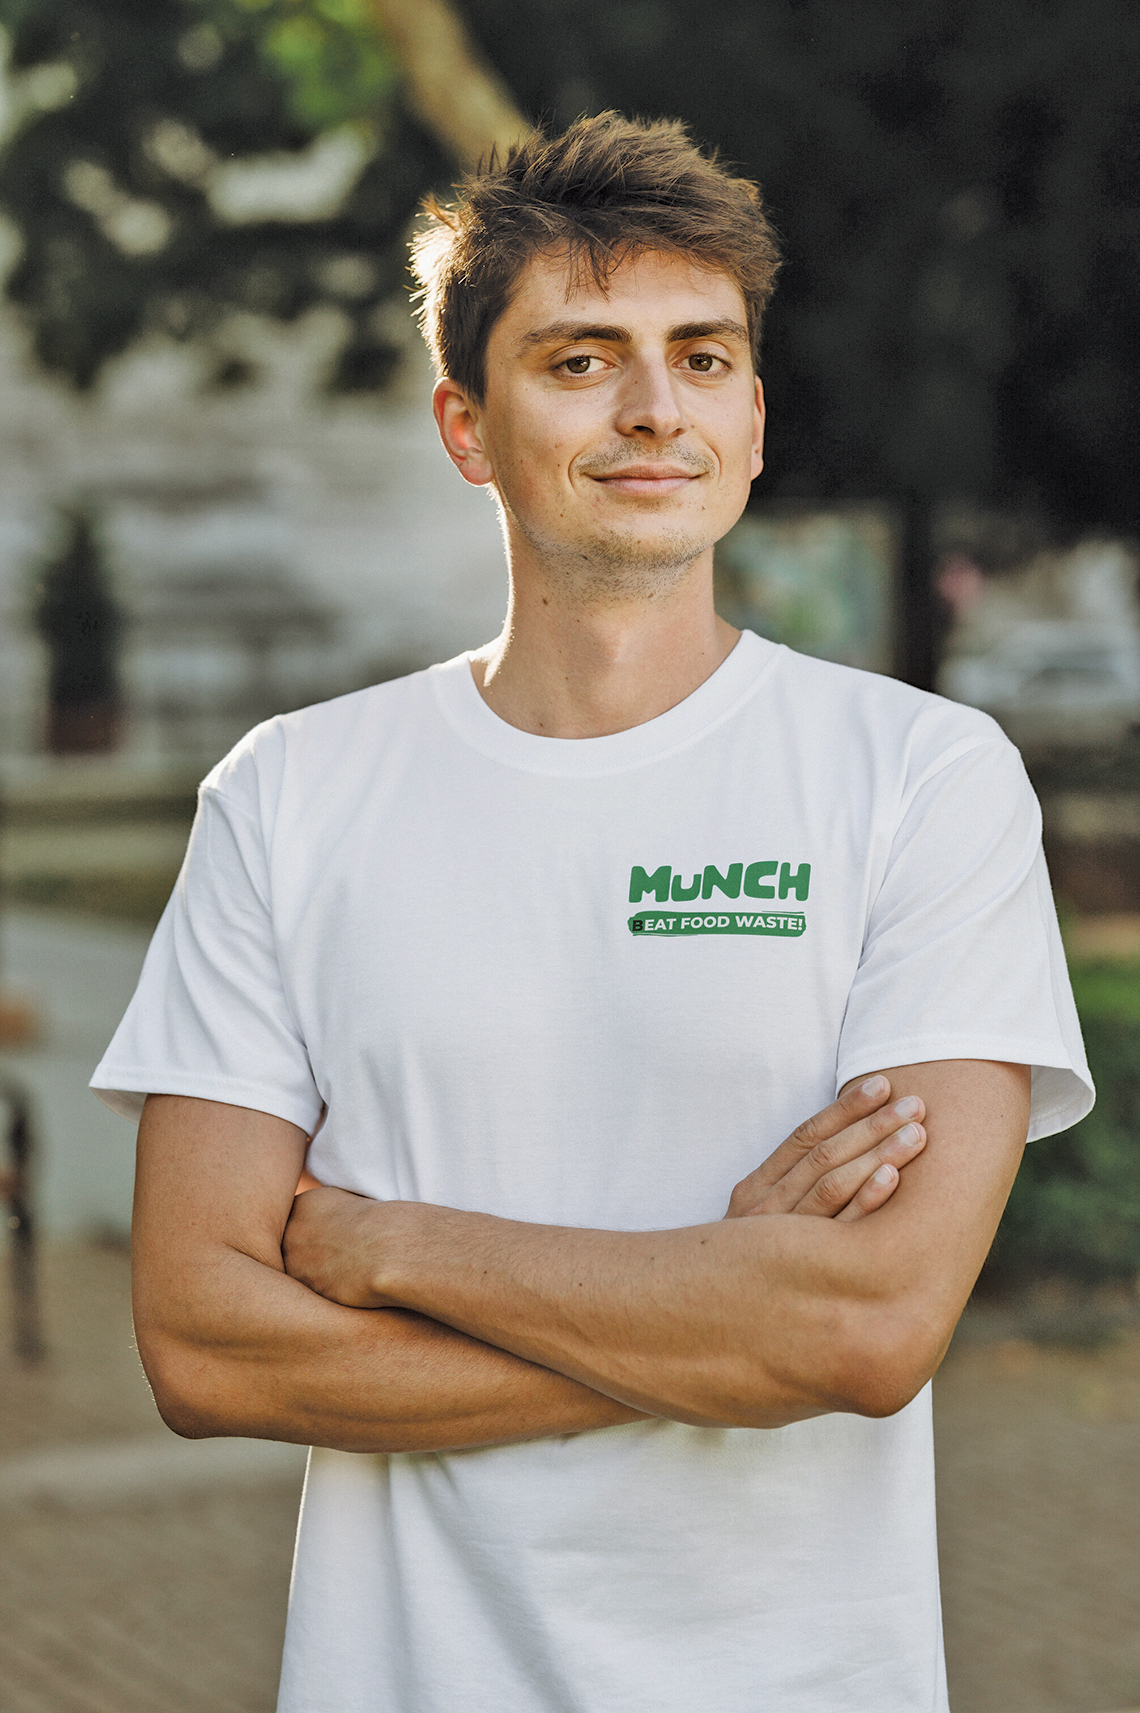 Un nou jucător care luptă împotriva risipei alimentare pe plan local: start-up-ul Munch din Ungaria intră pe piaţa din România în 1-2 luni şi ţinteşte să ajungă la peste 500 de parteneri până la final de an